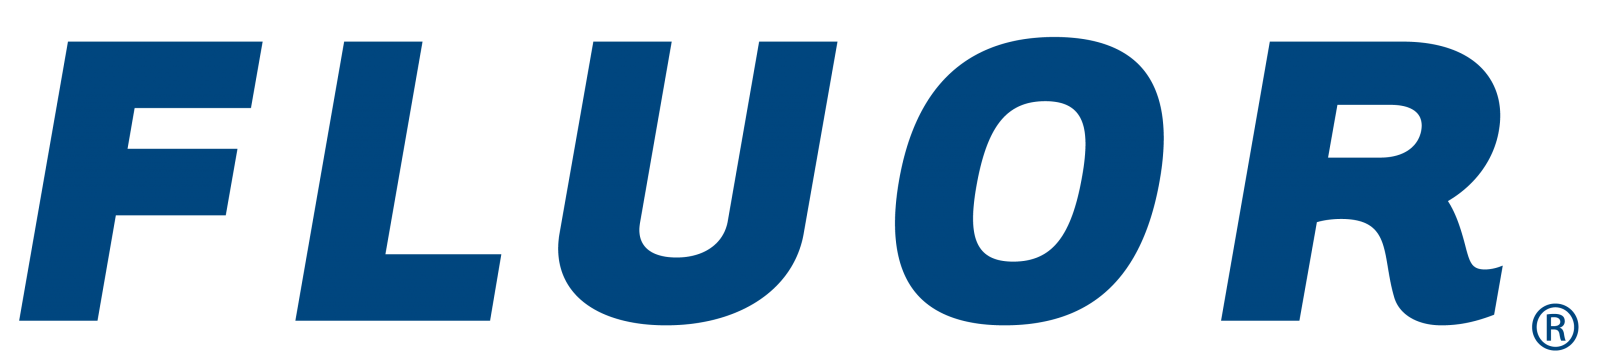 FLOUR logo